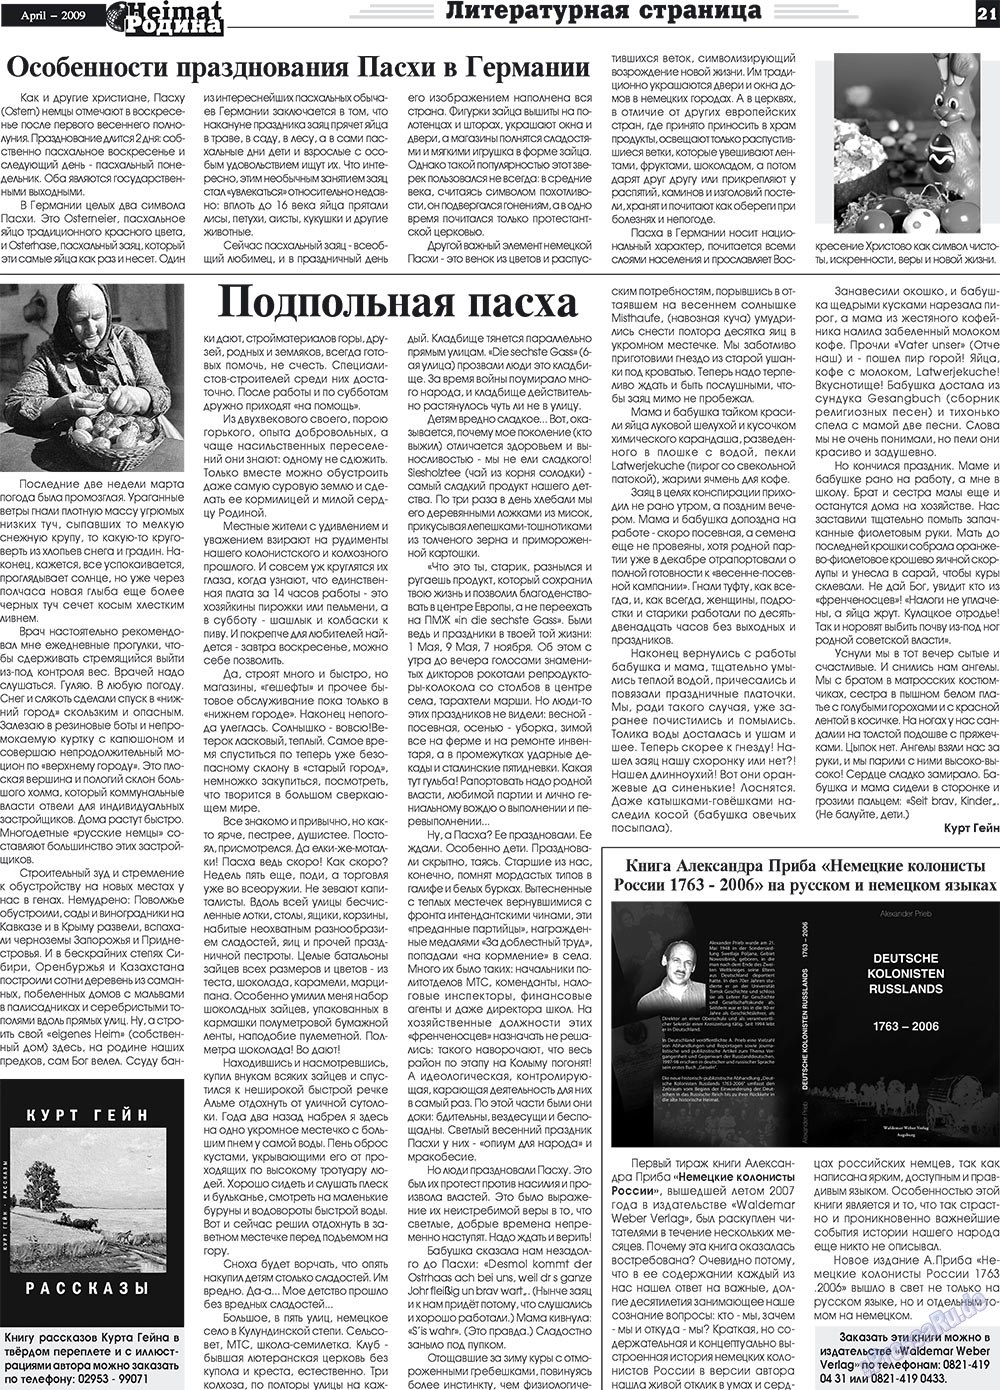 Heimat-Родина (газета). 2009 год, номер 4, стр. 21